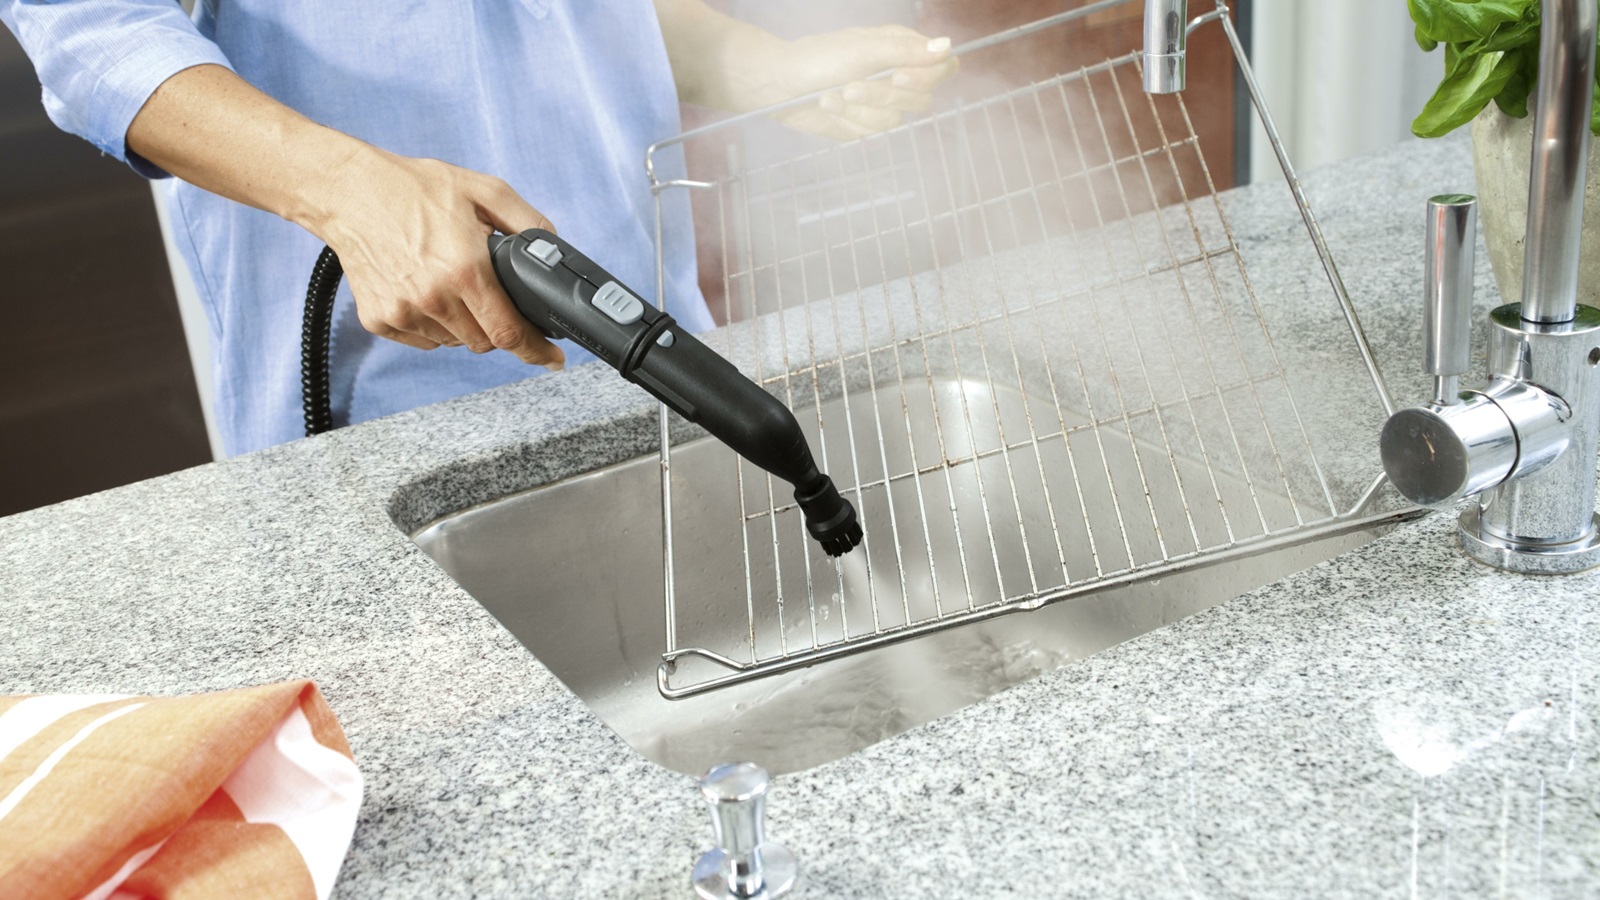 فواید استفاده از بخارشوی برای تمیز کردن لوازم آشپزخانه